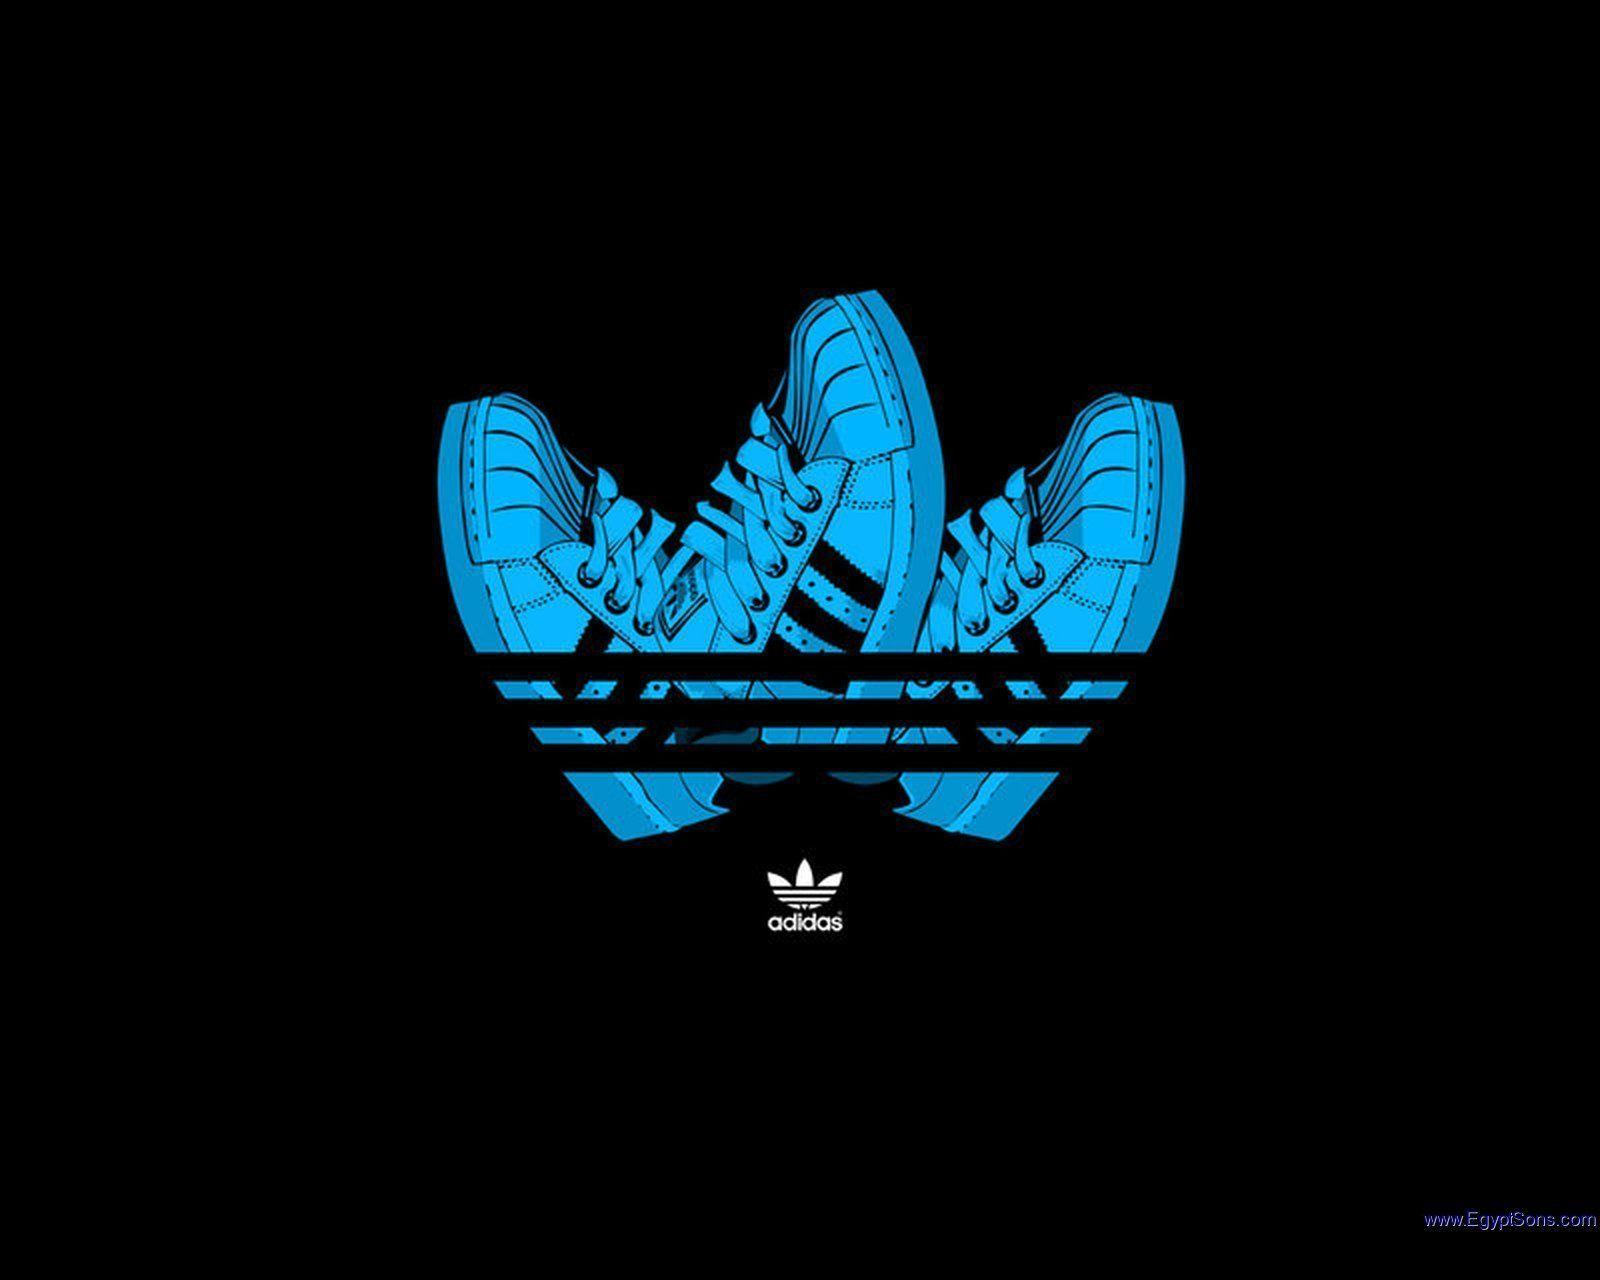 Comprar Adidas Originals Wallpaper 3d Off 73 Envao Gratis Soarella Com